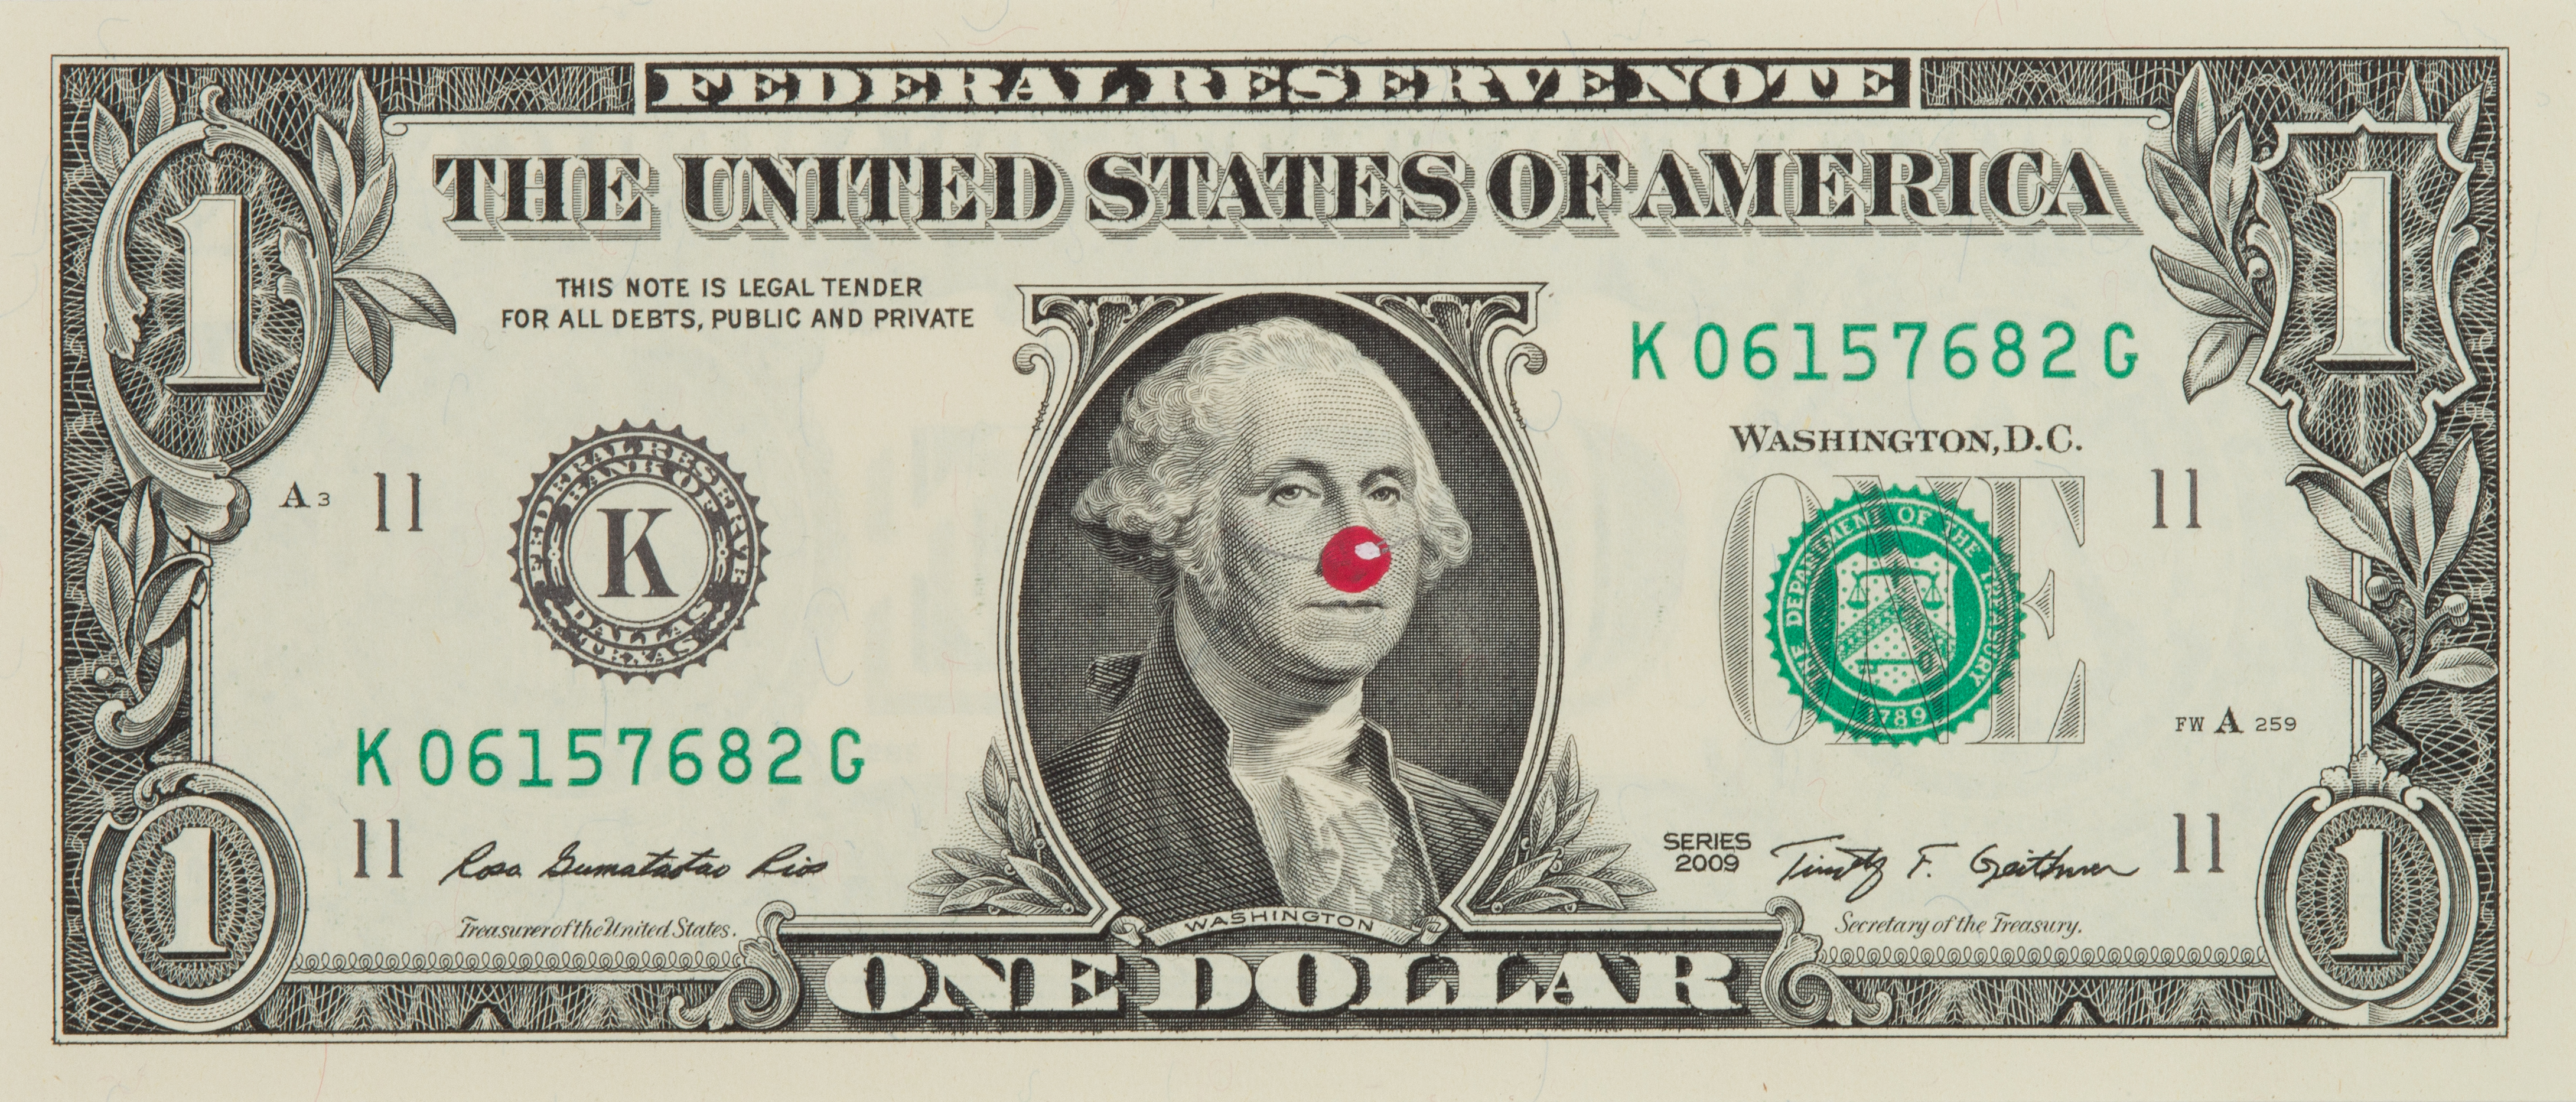 Hans-Peter Feldmann | One Dollar Bill with Red Nose | Art Basel